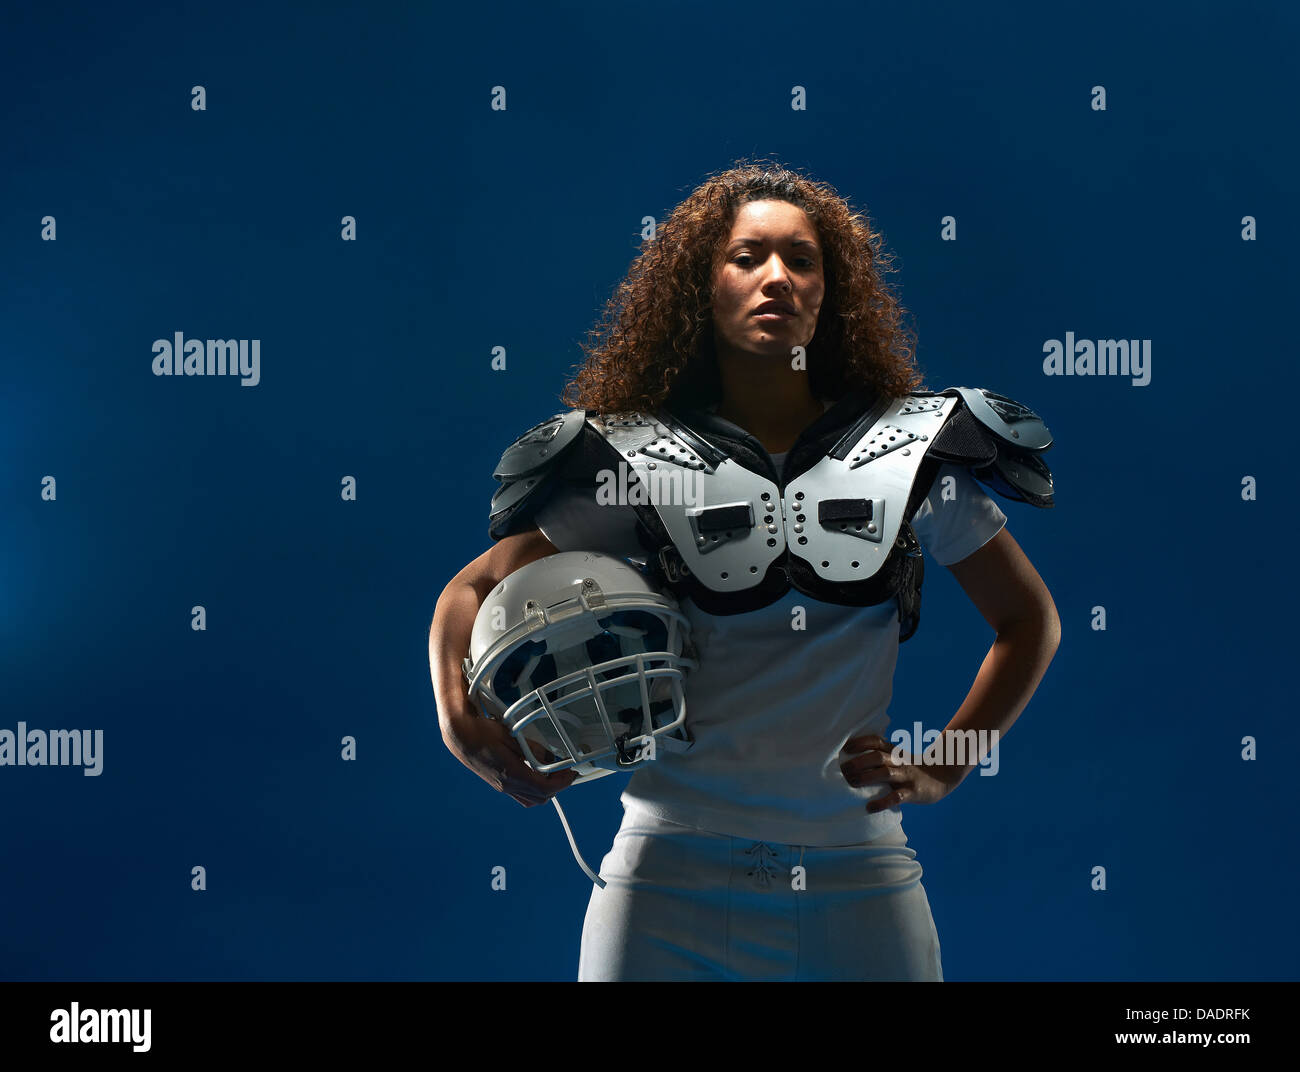 Portrait de femme joueur de football américain avec les épaulettes et le casque Banque D'Images